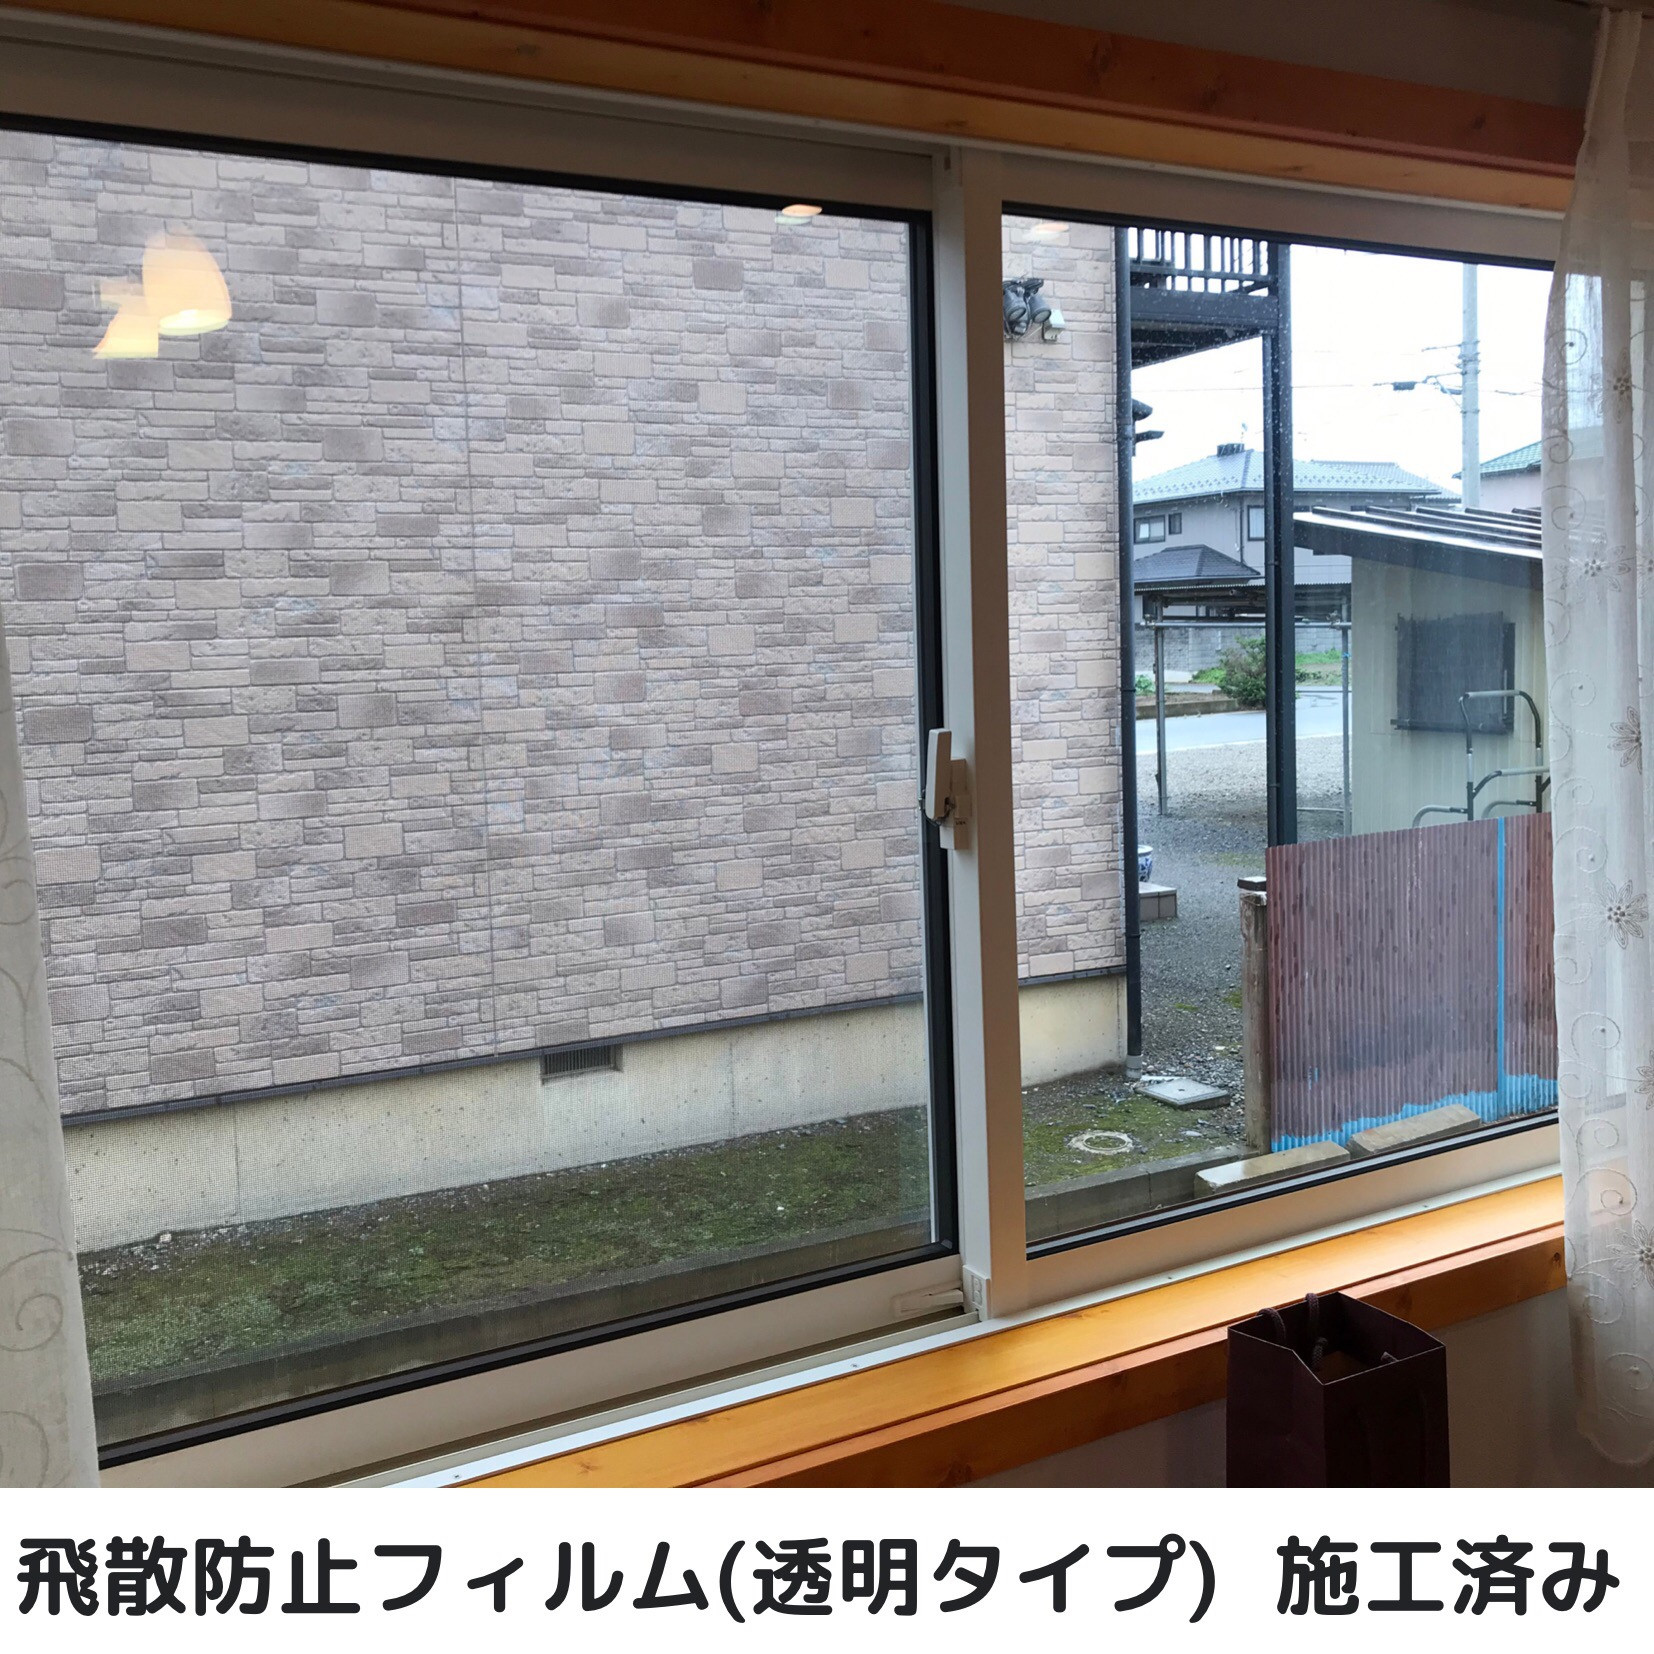 埼玉県三芳町で窓ガラスフィルム施工をお考えの方